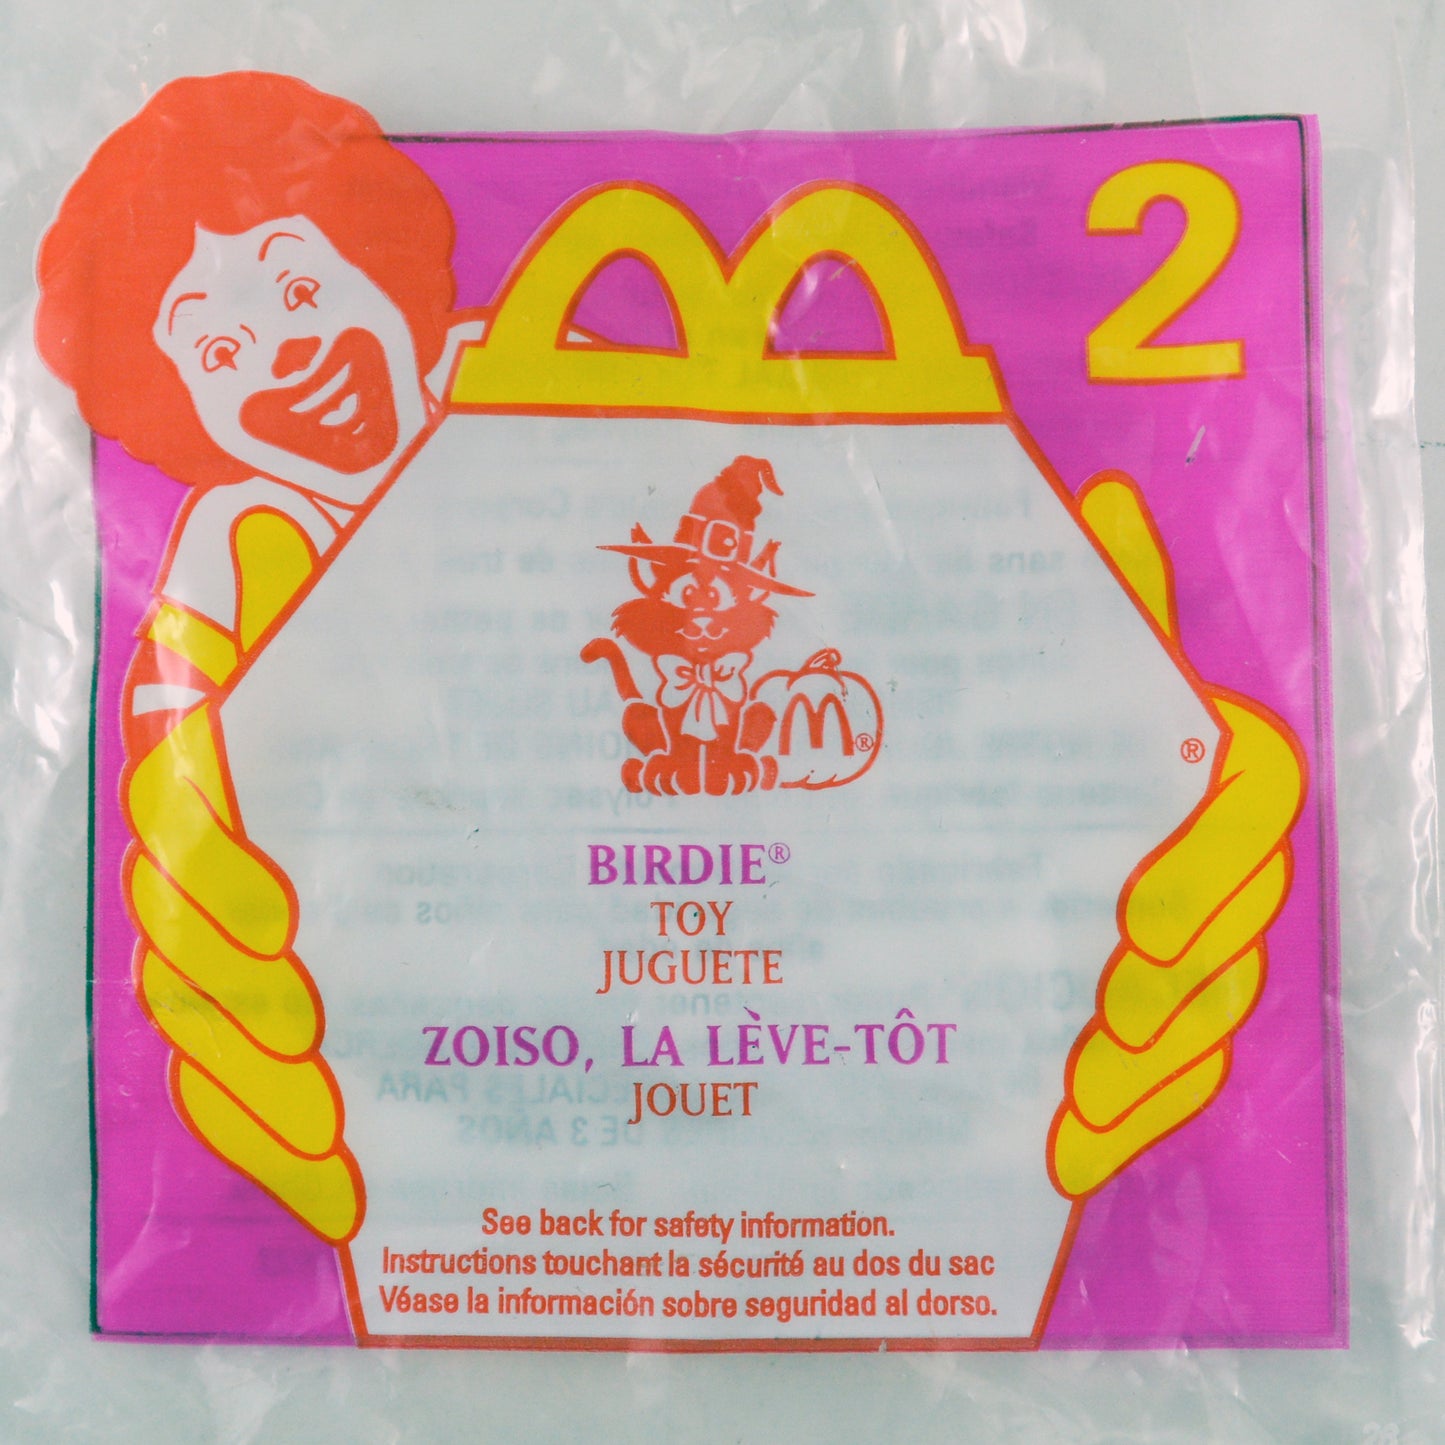 マクドナルド ハッピーセット 1997 ホーンテッドハロウィン キャンディーケース 2 バーディー 袋入